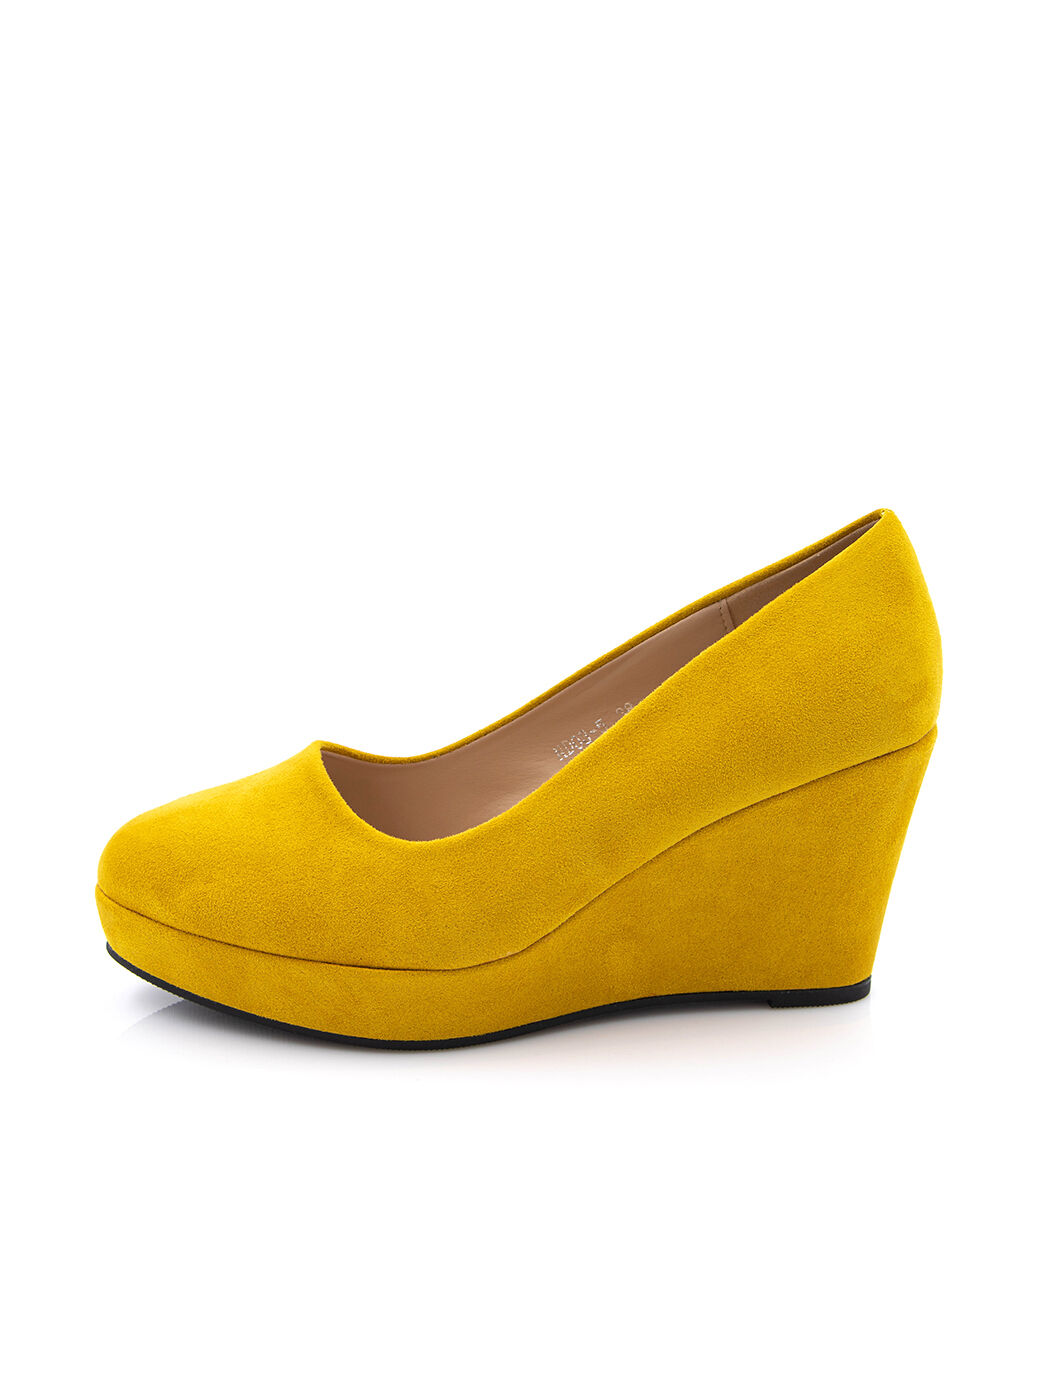 Туфли женские желтые экозамша каблук устойчивый демисезон от производителя 5M